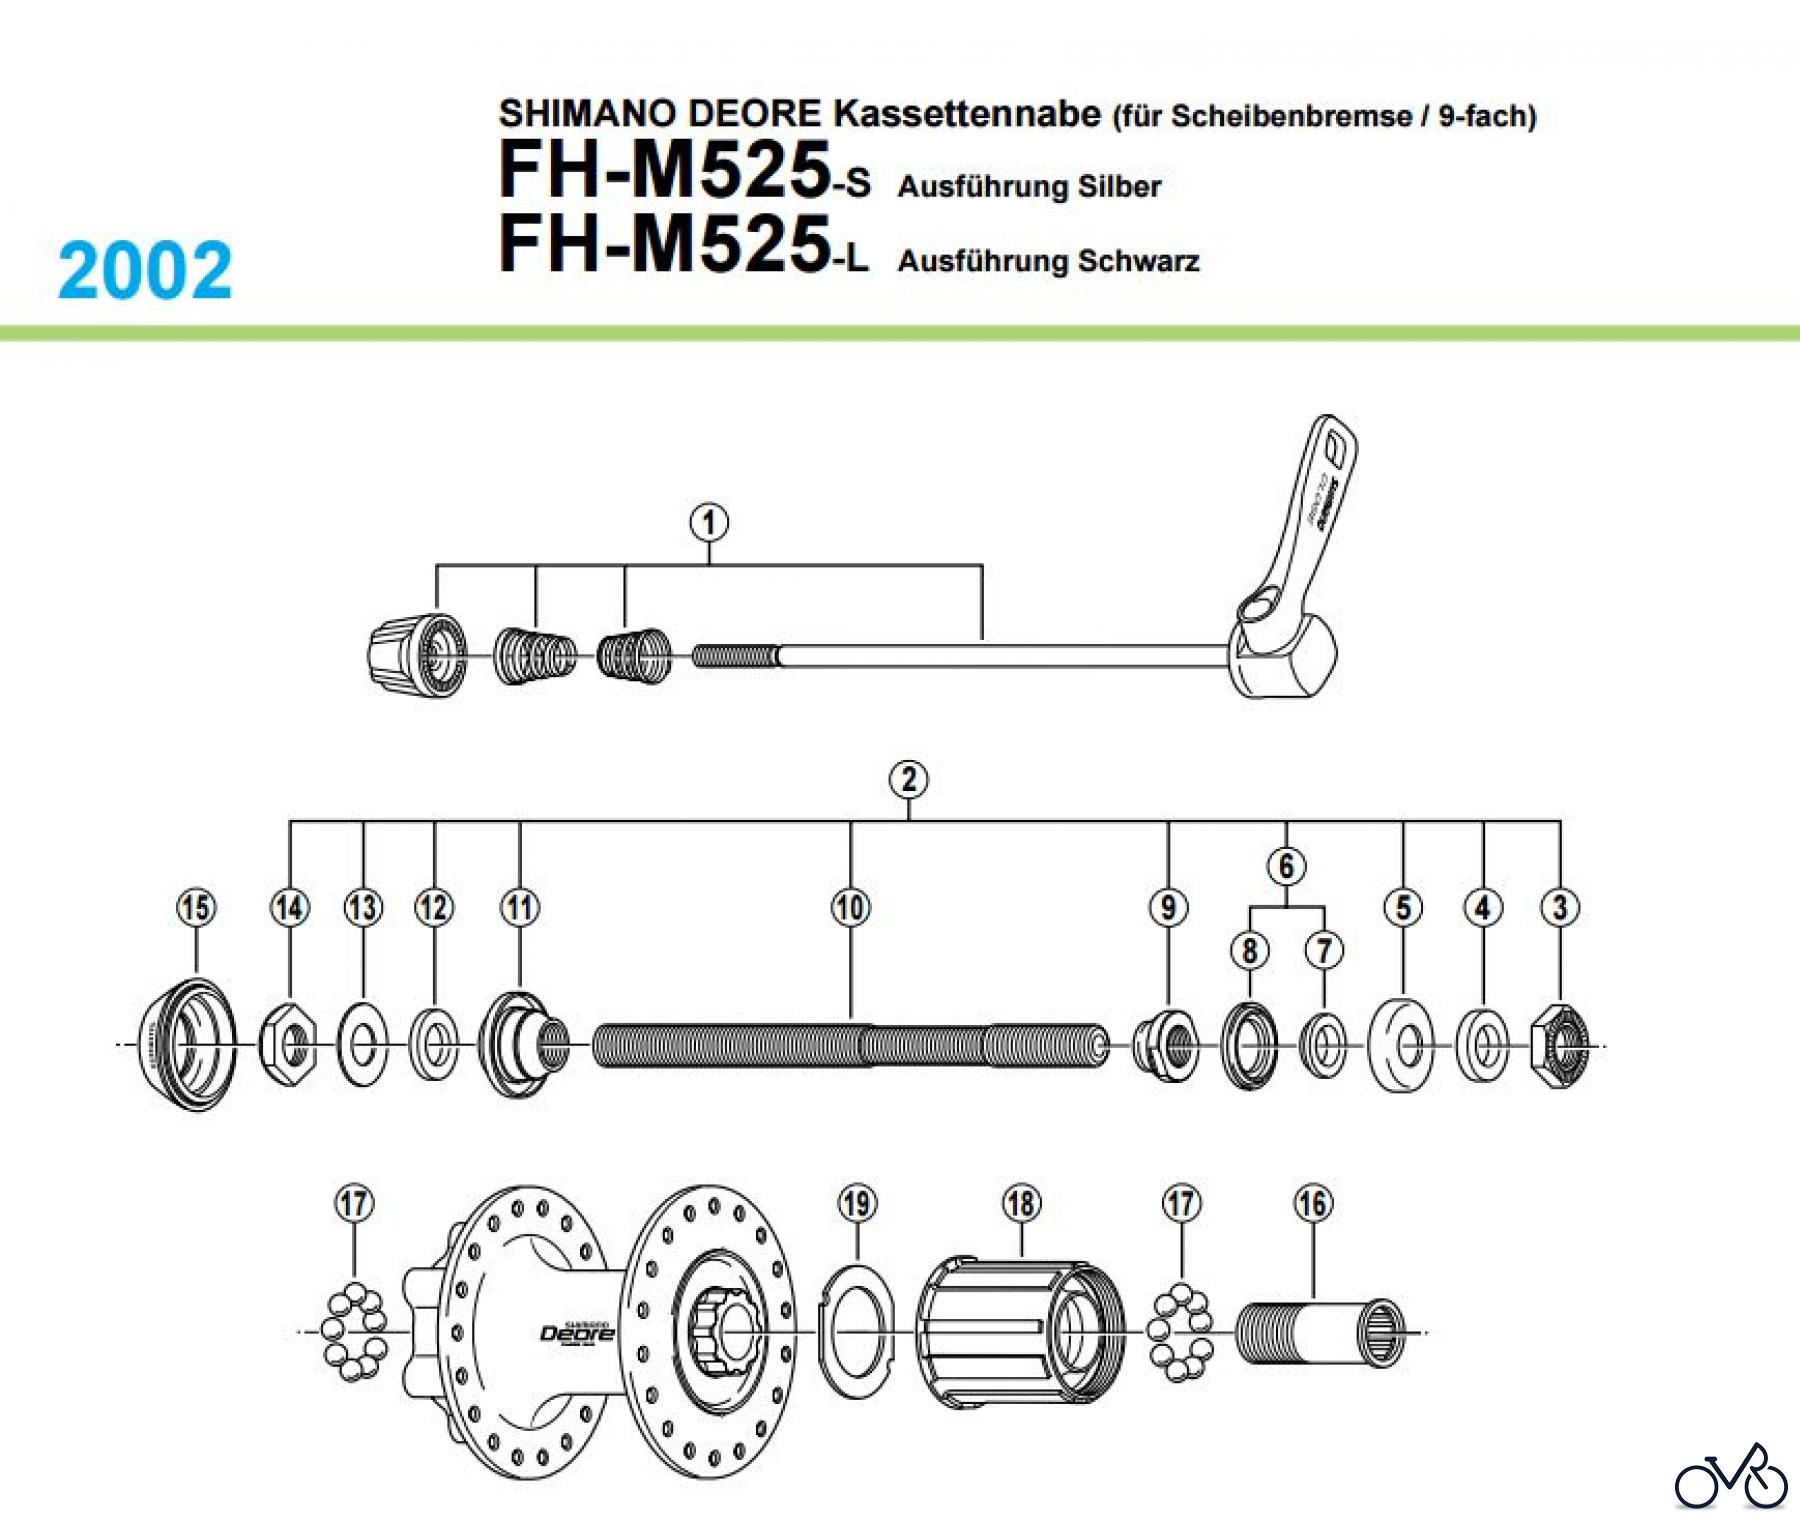  Shimano FH Free Hub - Freilaufnabe FH-M525 -2067 SHIMANO DEORE Kassettennabe (für Scheibenbremse / 9-fach)